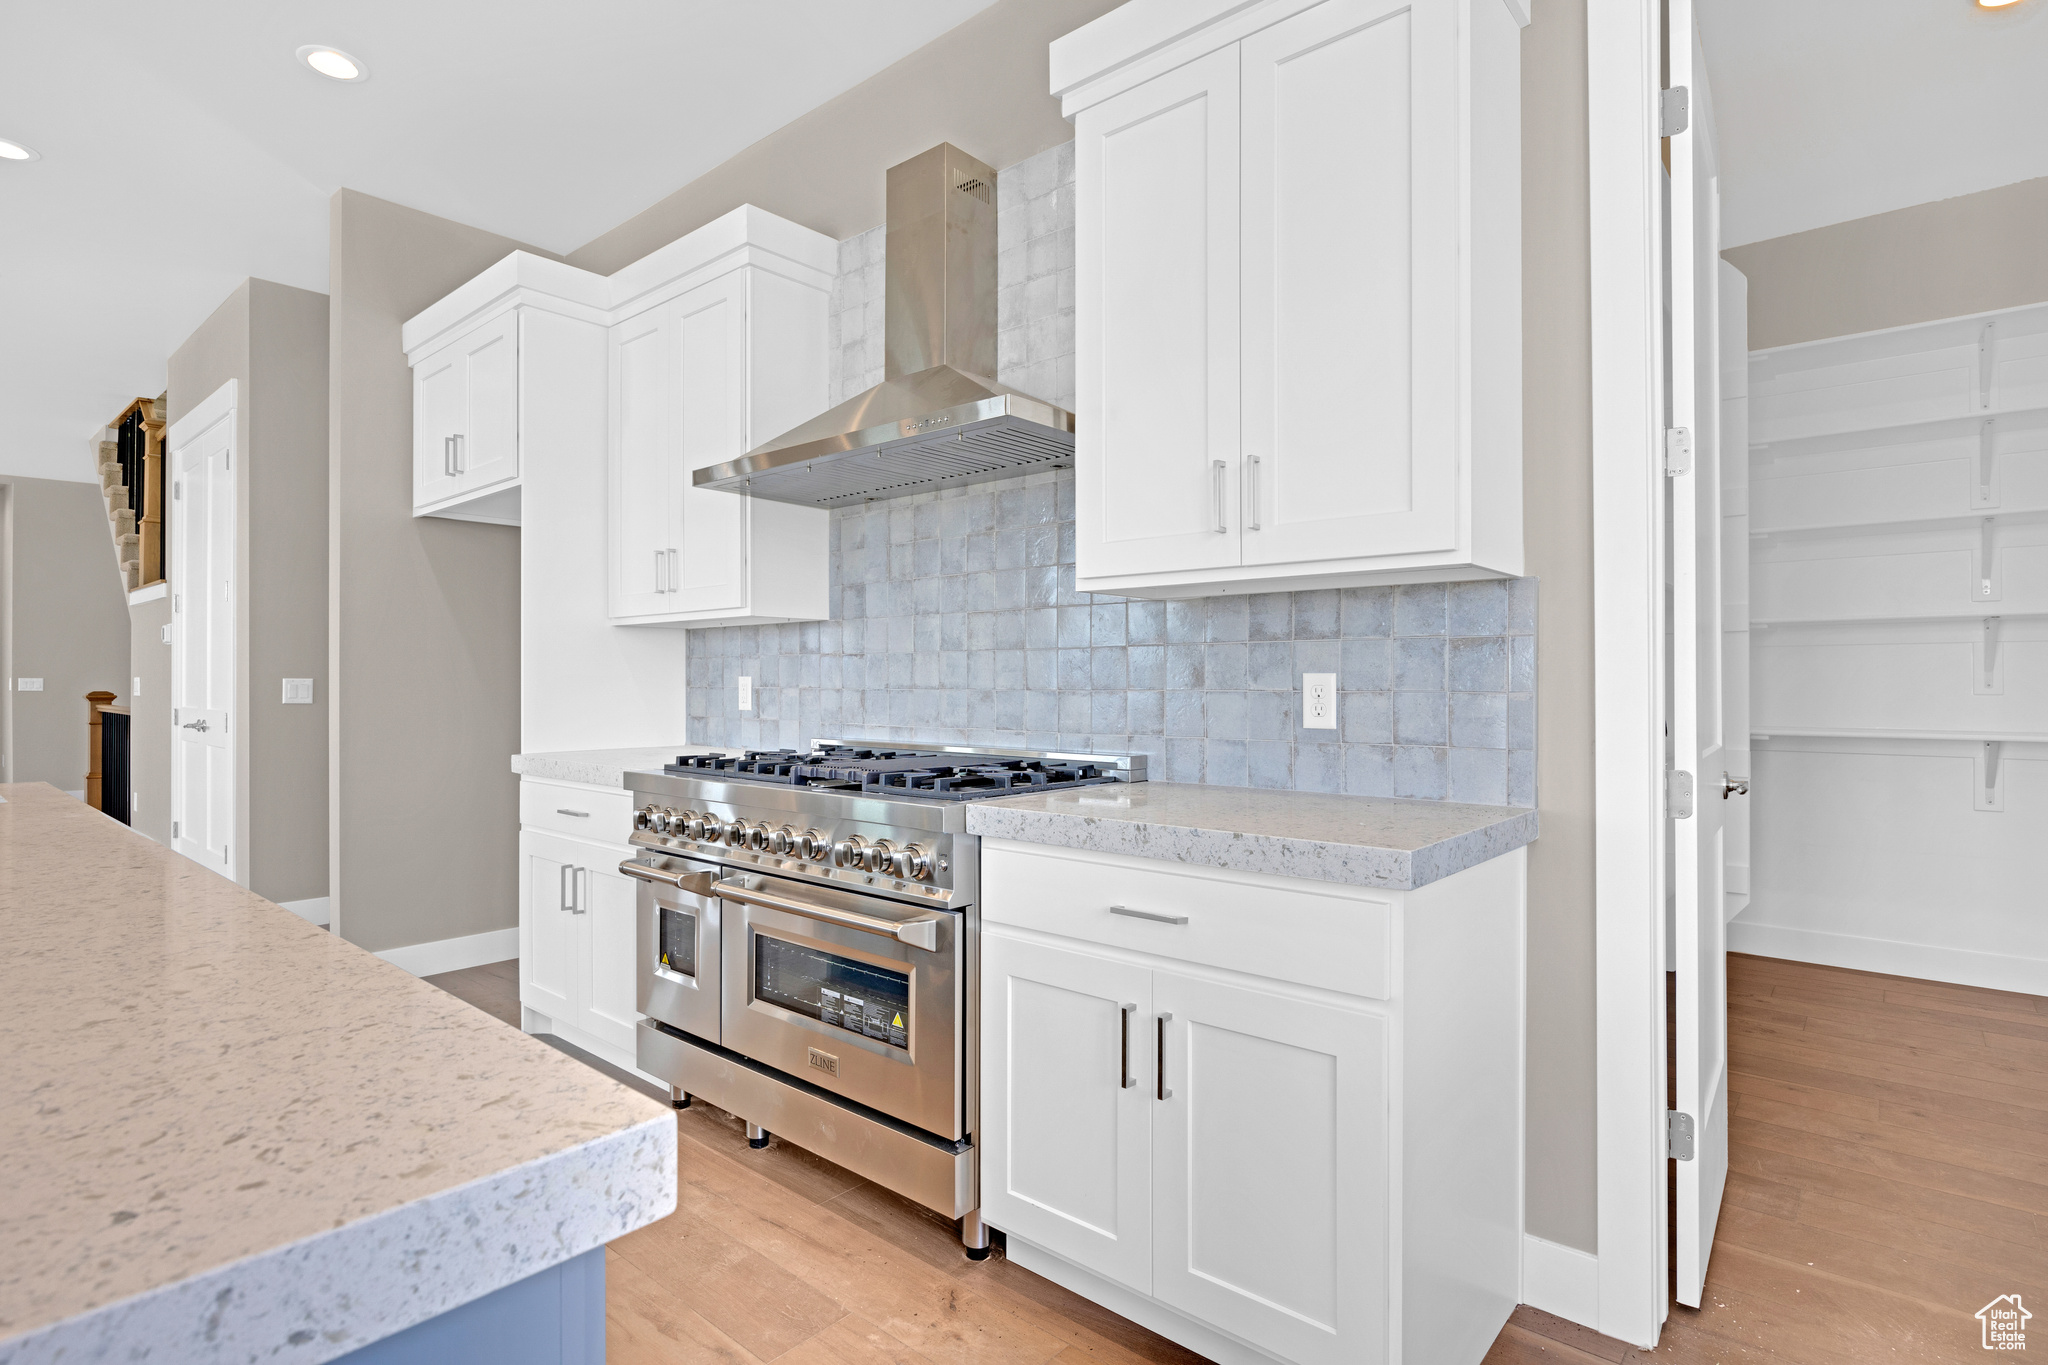 Kitchen with backsplash, double oven range, light hardwood / wood-style floors, wall chimney range hood, and white cabinets